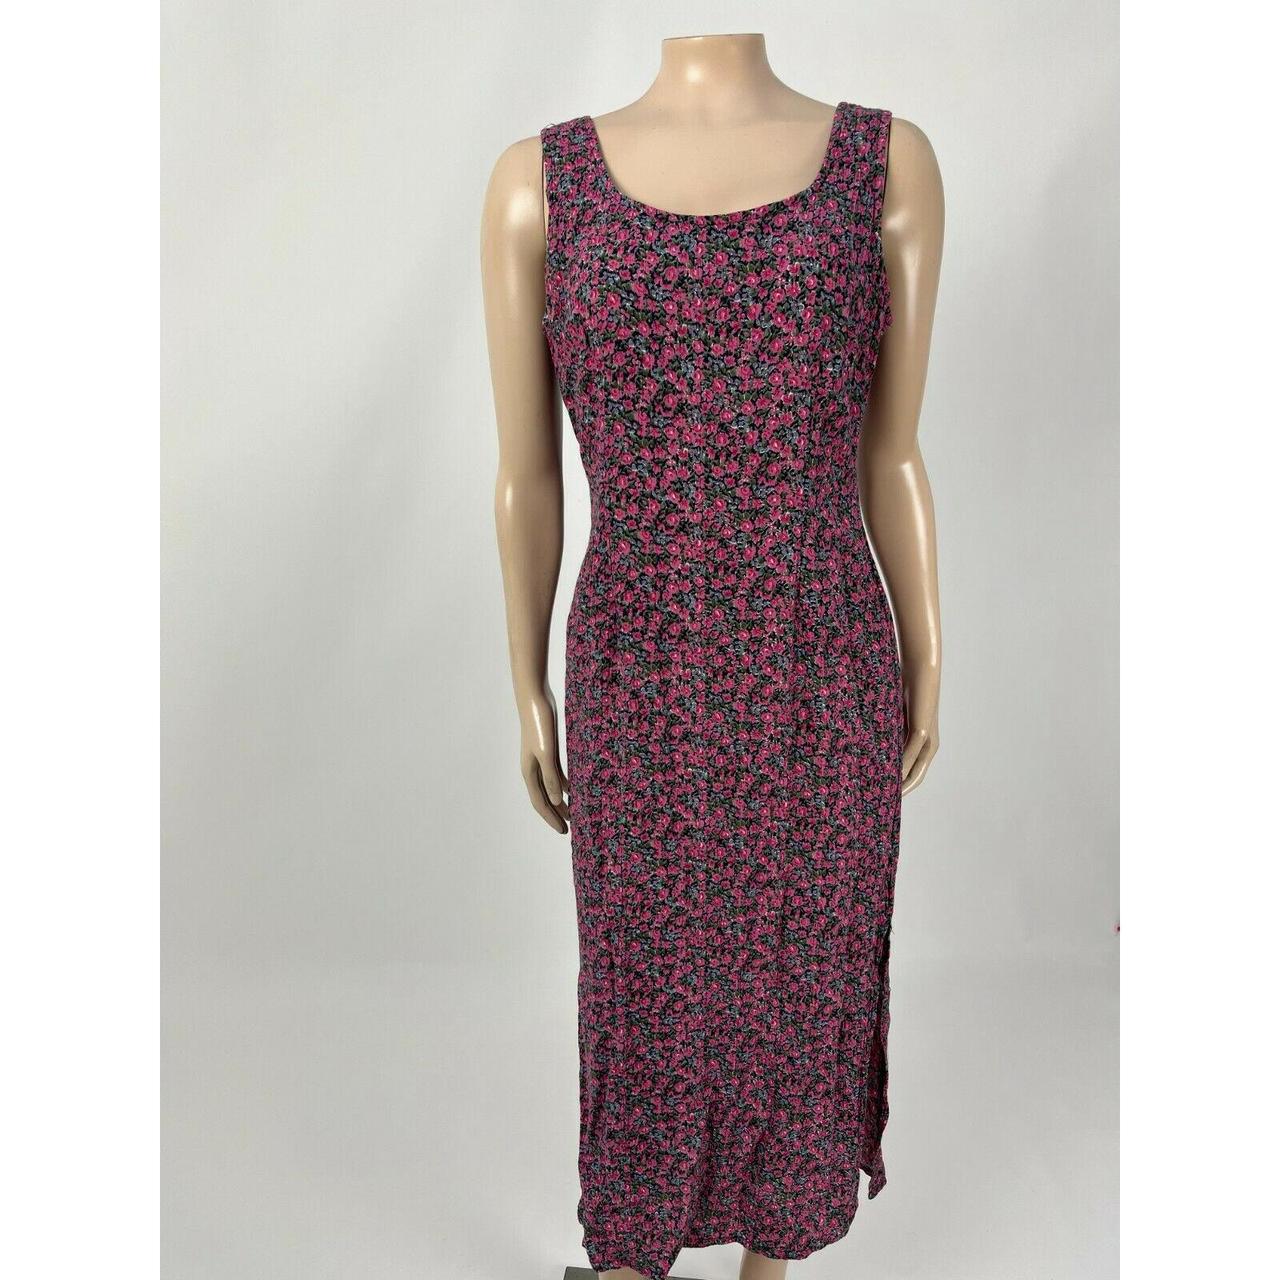 Vintage 90s Unbranded Women's Dress Floral Rayon... - Depop